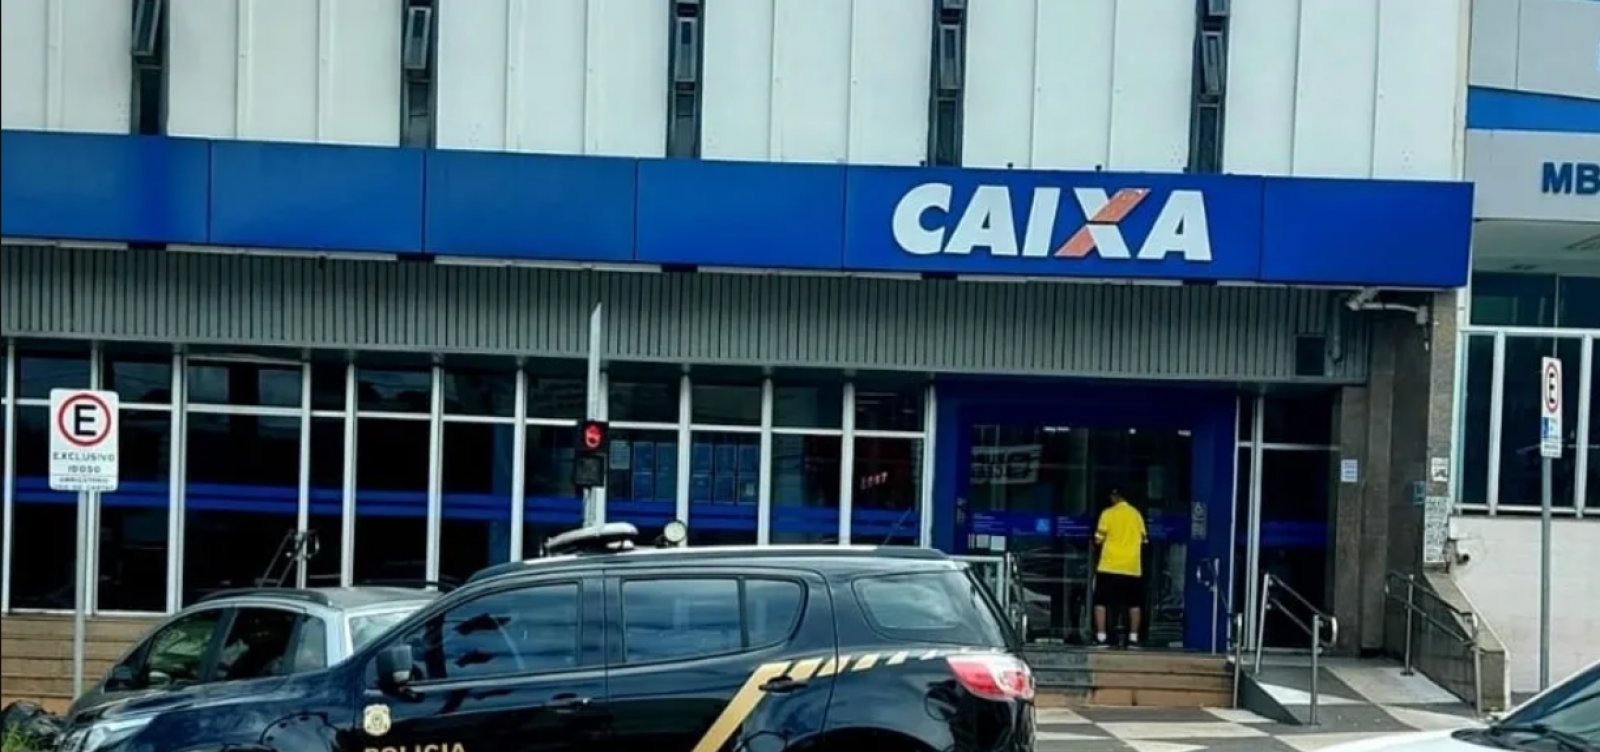 PF deflagra operação para investigar fraude em empréstimos bancários em Feira de Santana